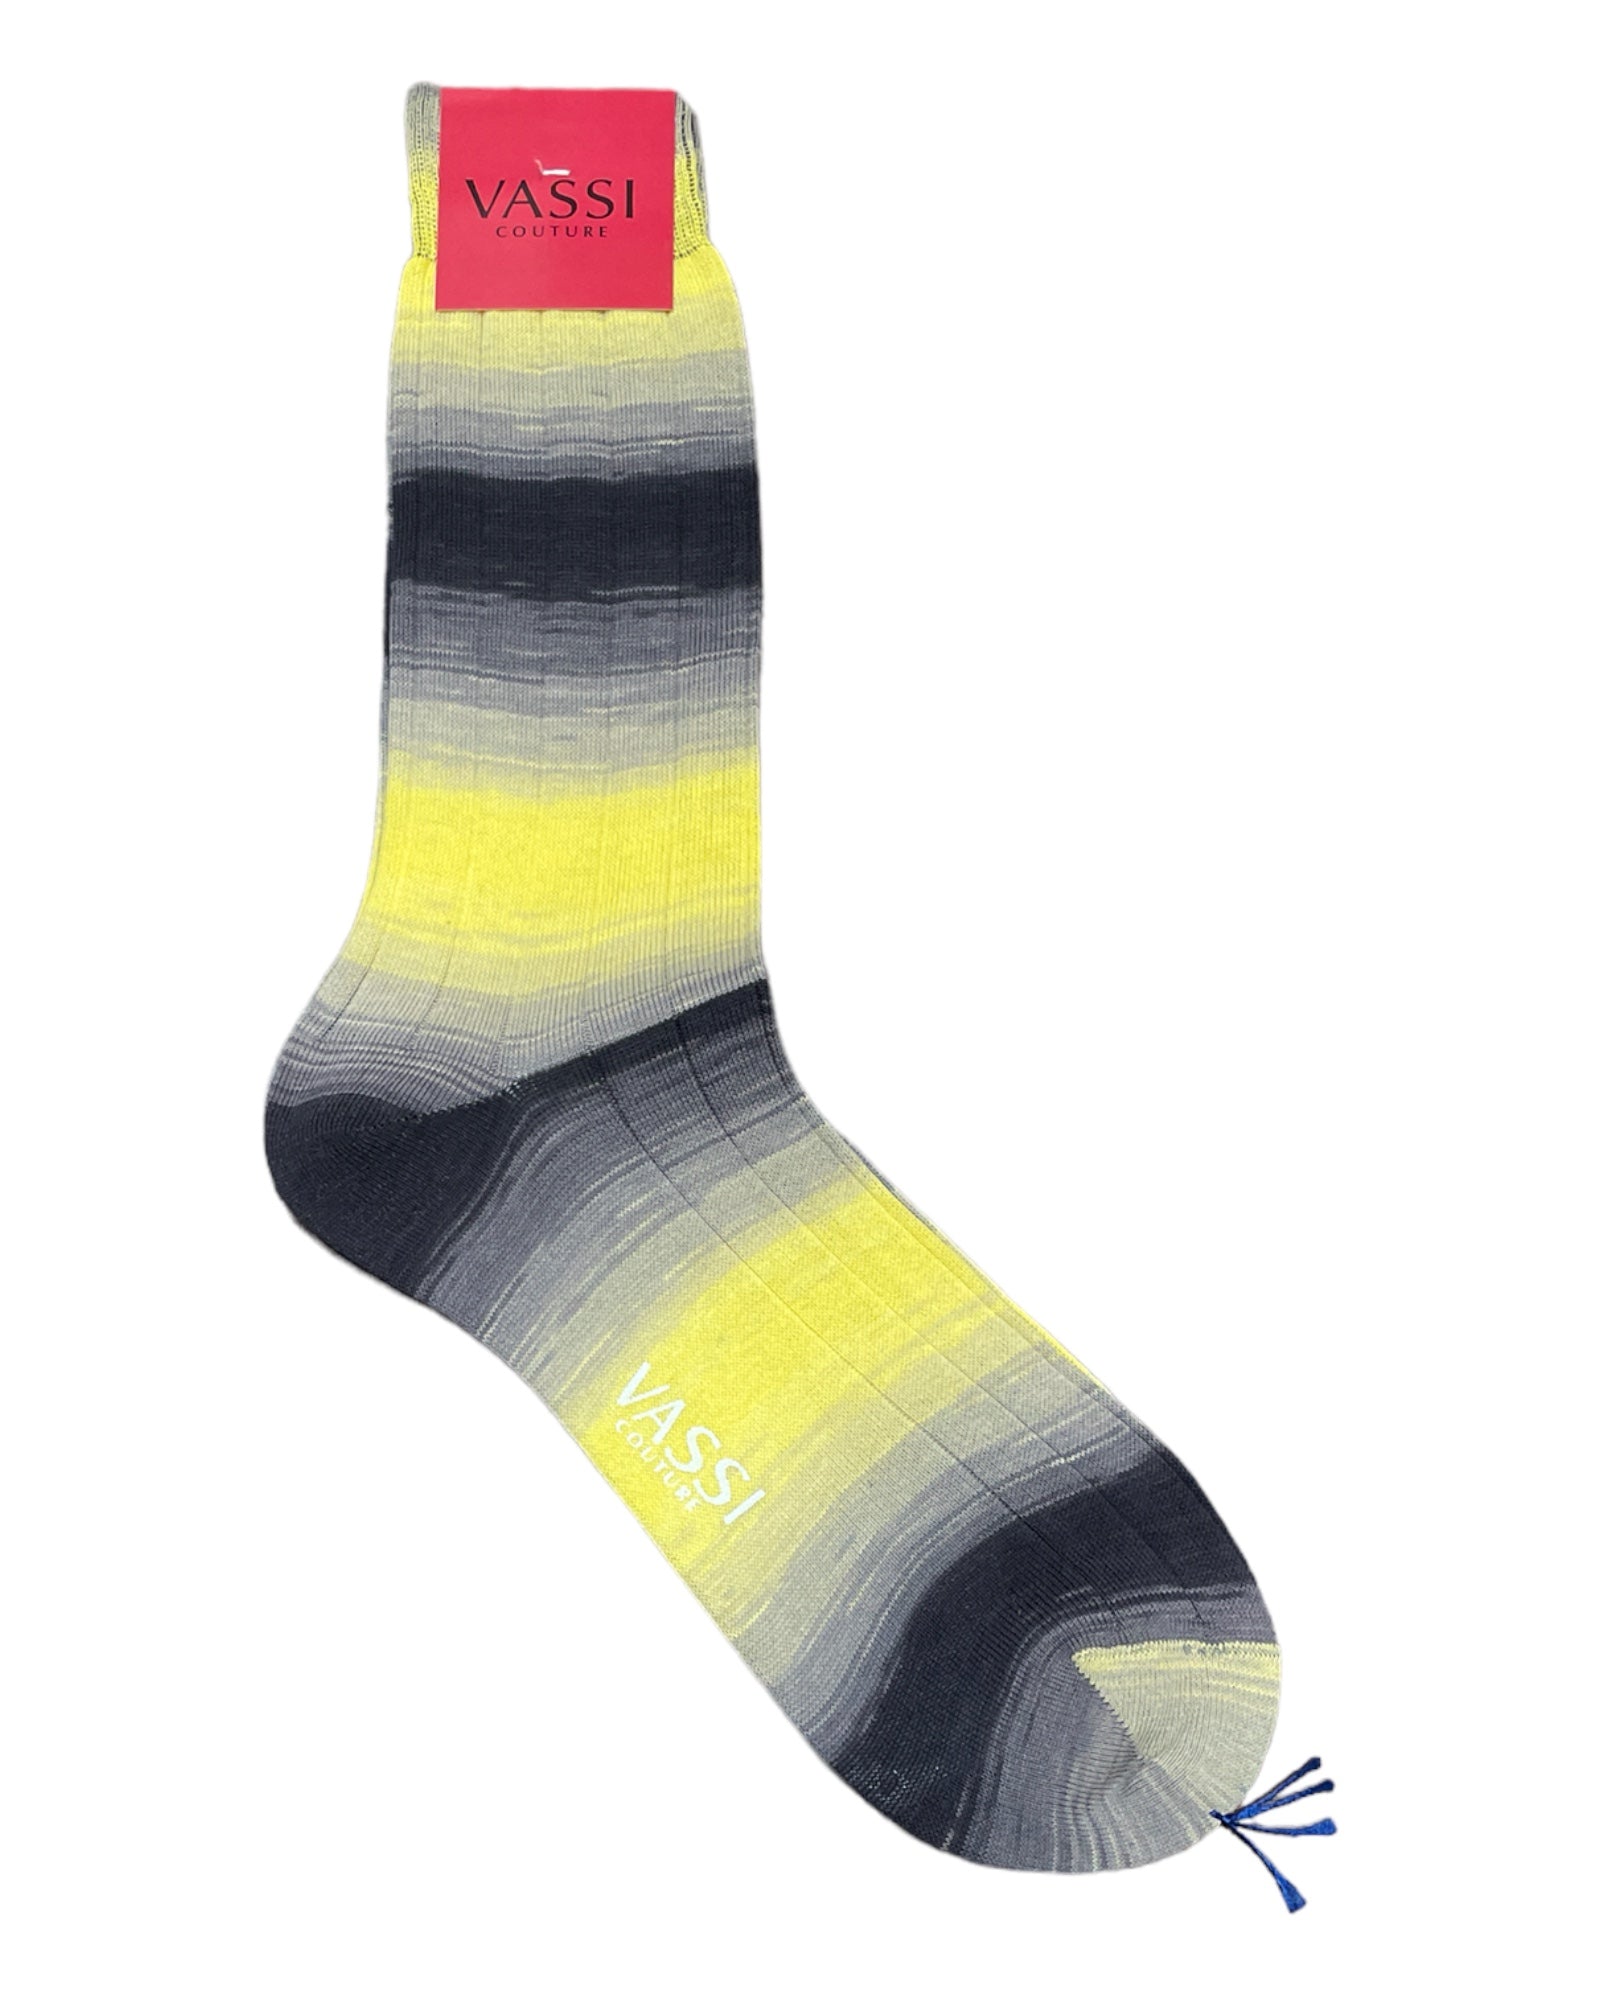 Extra-fine Yellow & Grey Shadow Striped Cotton Socks Socks